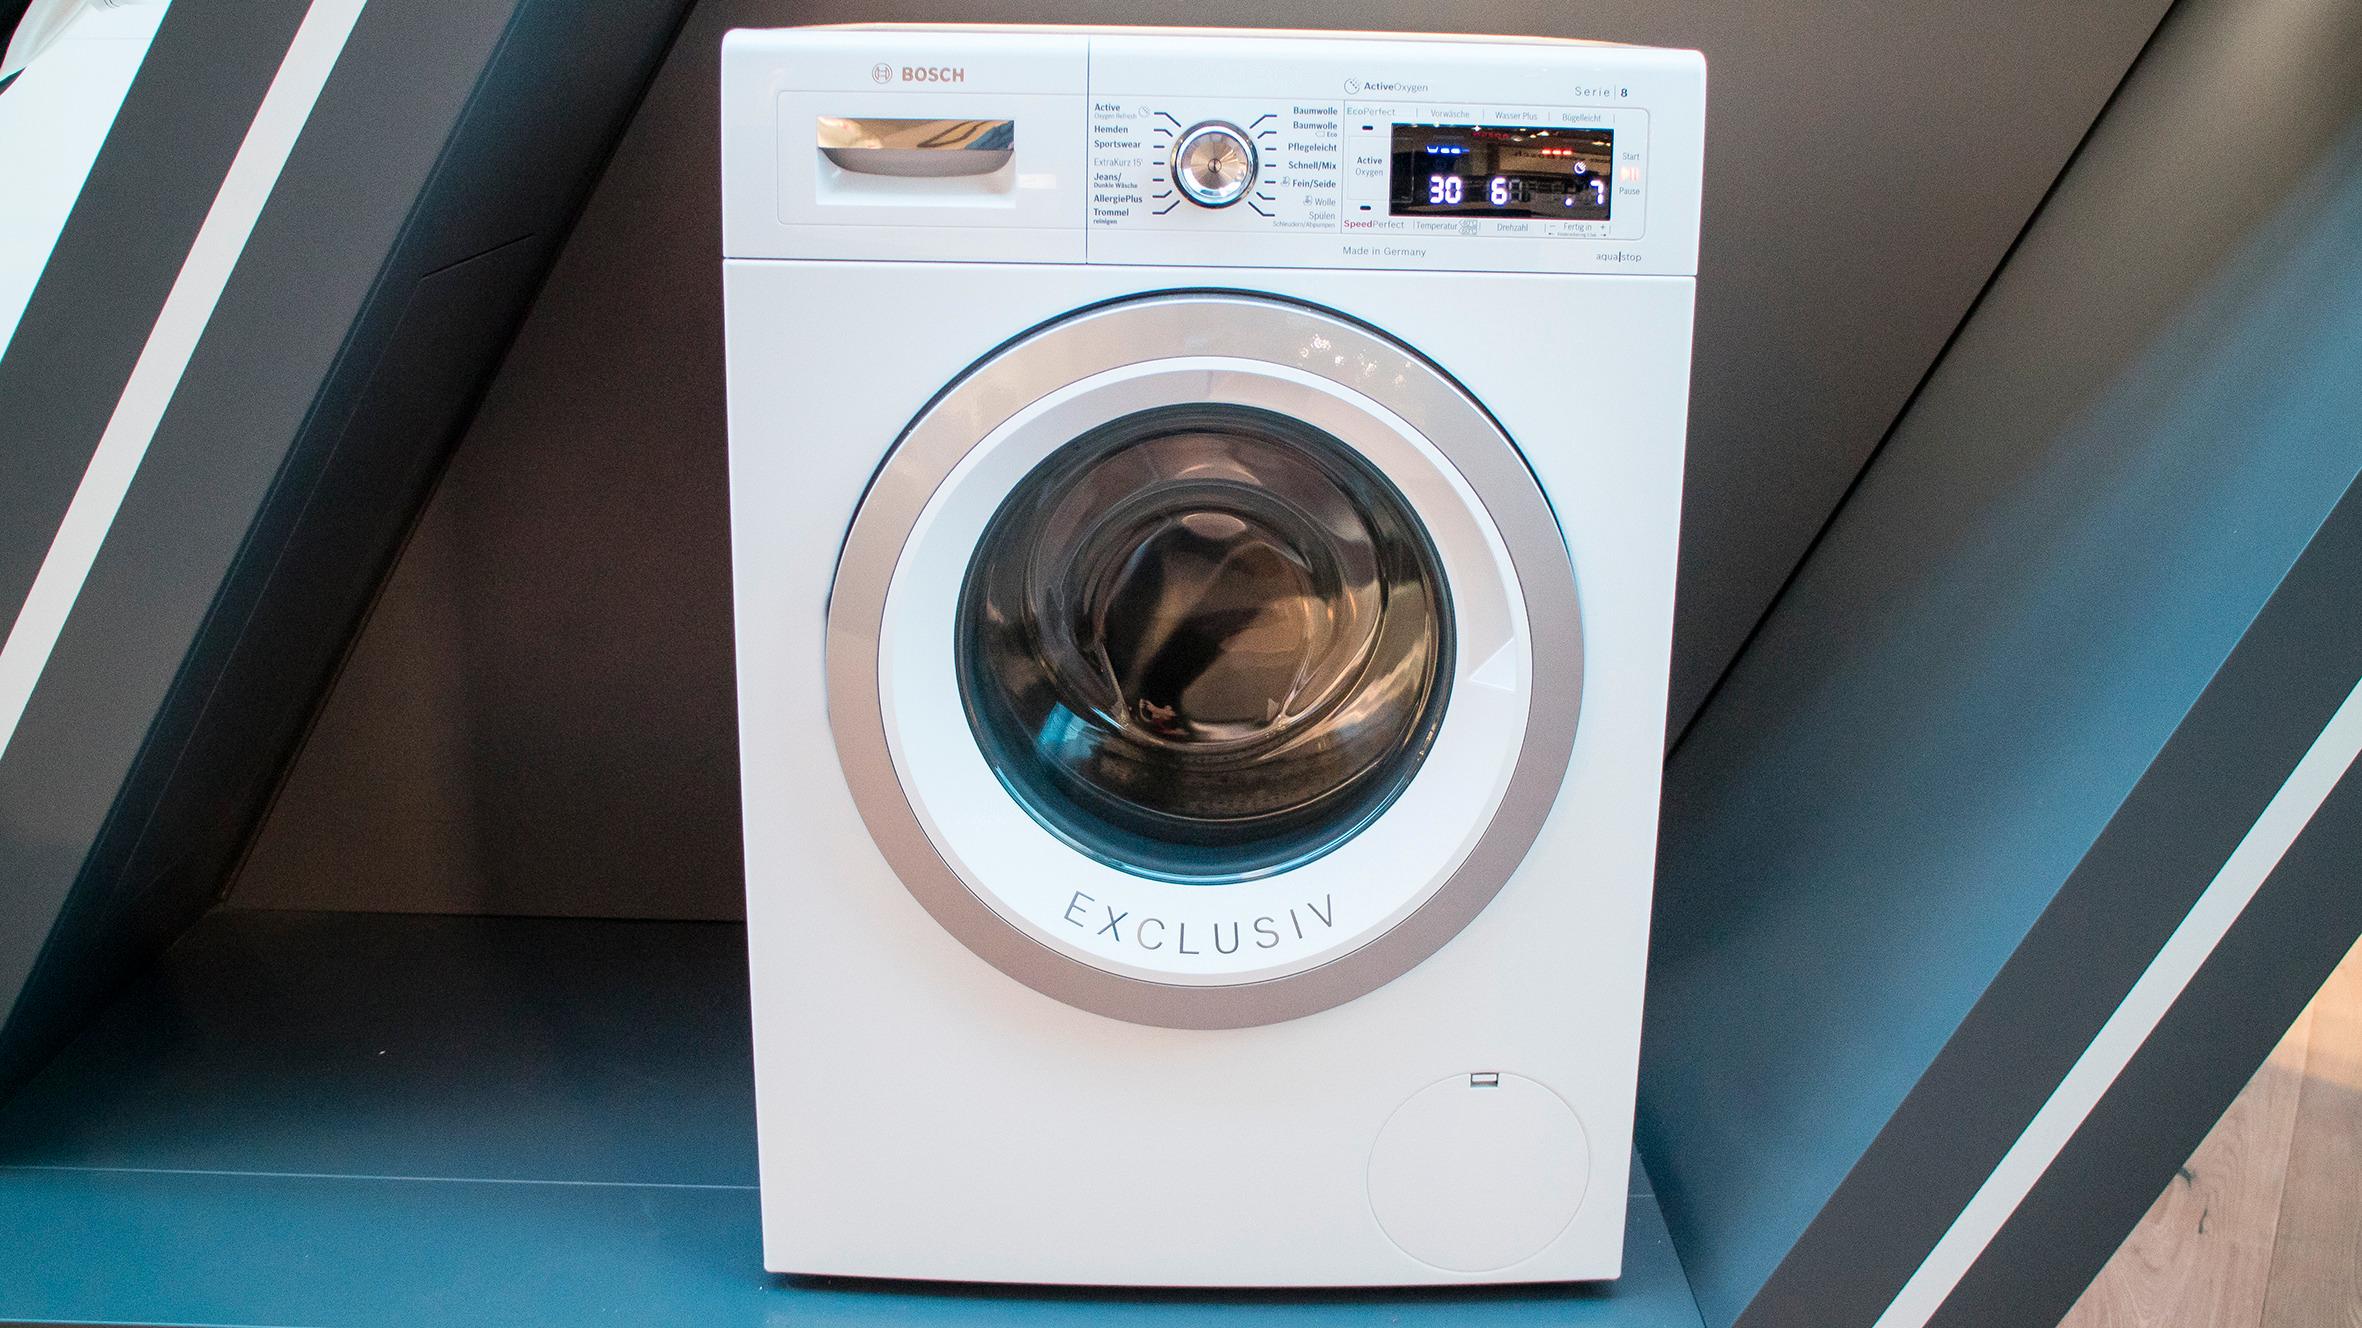 Renseri: Bosch nye toppmodell vaskemaskin har fått en ozongenerator som bruker okygenvarianten til å drepe bakterier og gjøre tøyet enda renere. Foto: Odd Richard Valmot